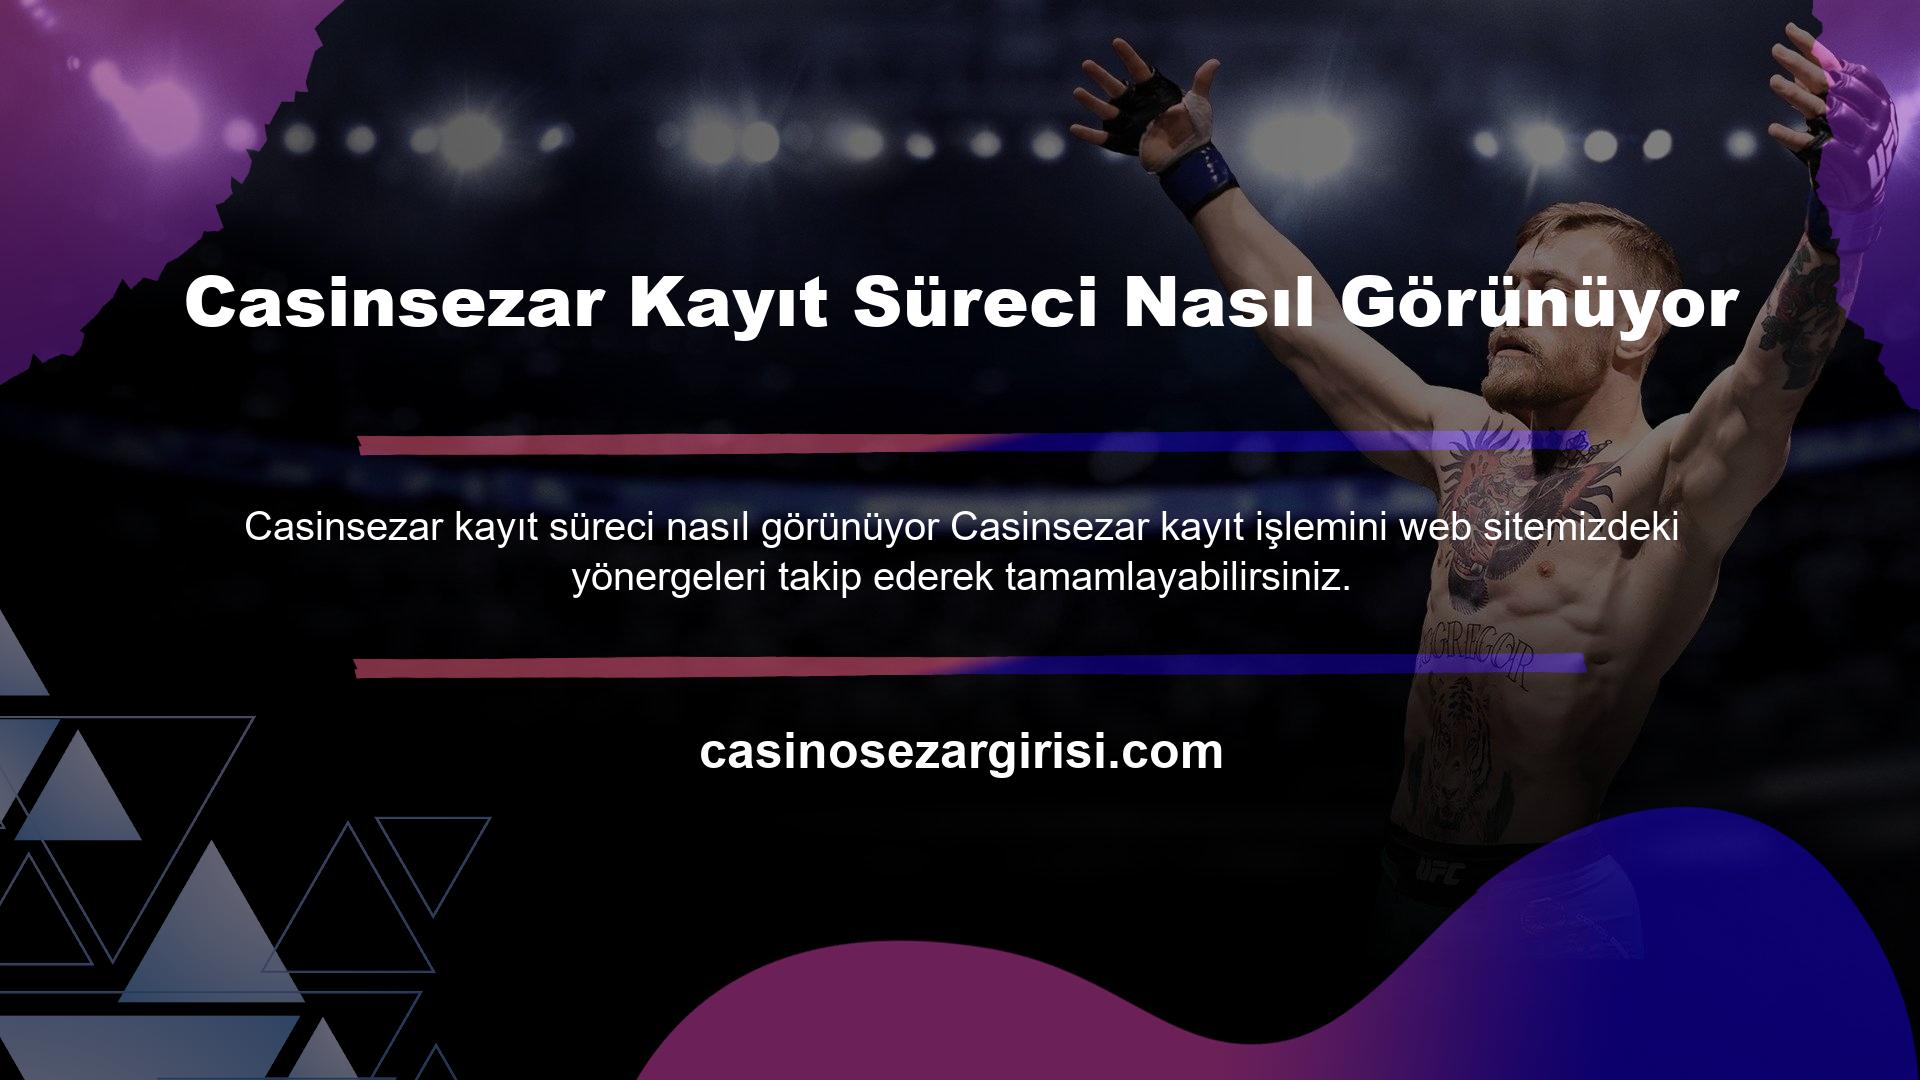 Casinsezar, canlı oyunlarla ilgili ayrıntılı etkinlik ve aktiviteleri yayınlayan ve aynı zamanda sanal kumarhane ve oyun detaylarıyla zengin bir yayın akışına sahip şirketlerden biridir